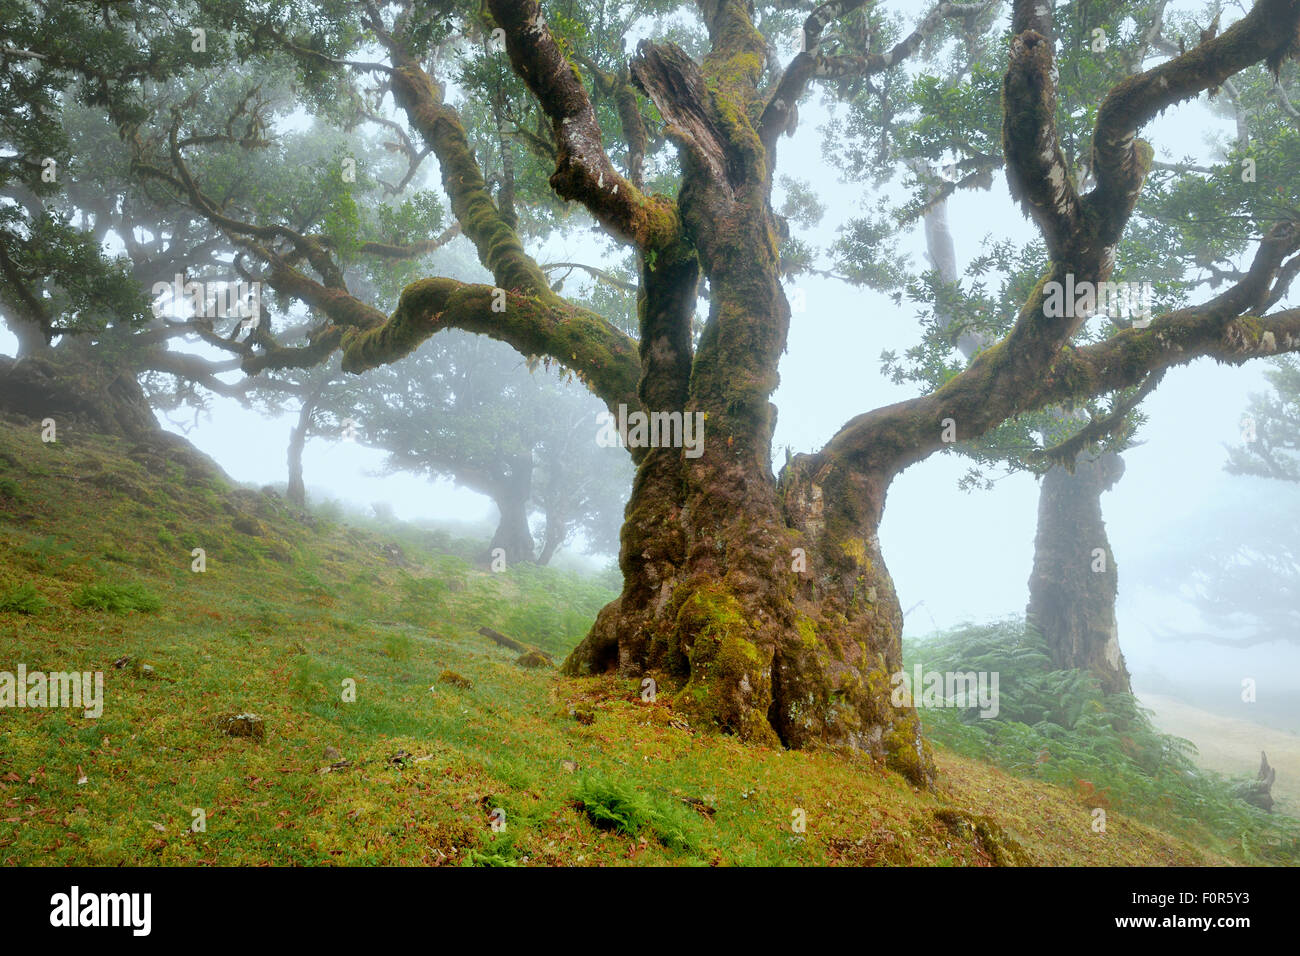 Alten Lorbeerwald oder Lorbeerwald, Stinkwood (Ocotea Foetens) Bäume im Nebel, UNESCO-Weltkulturerbe, Atelier, Madeira Stockfoto